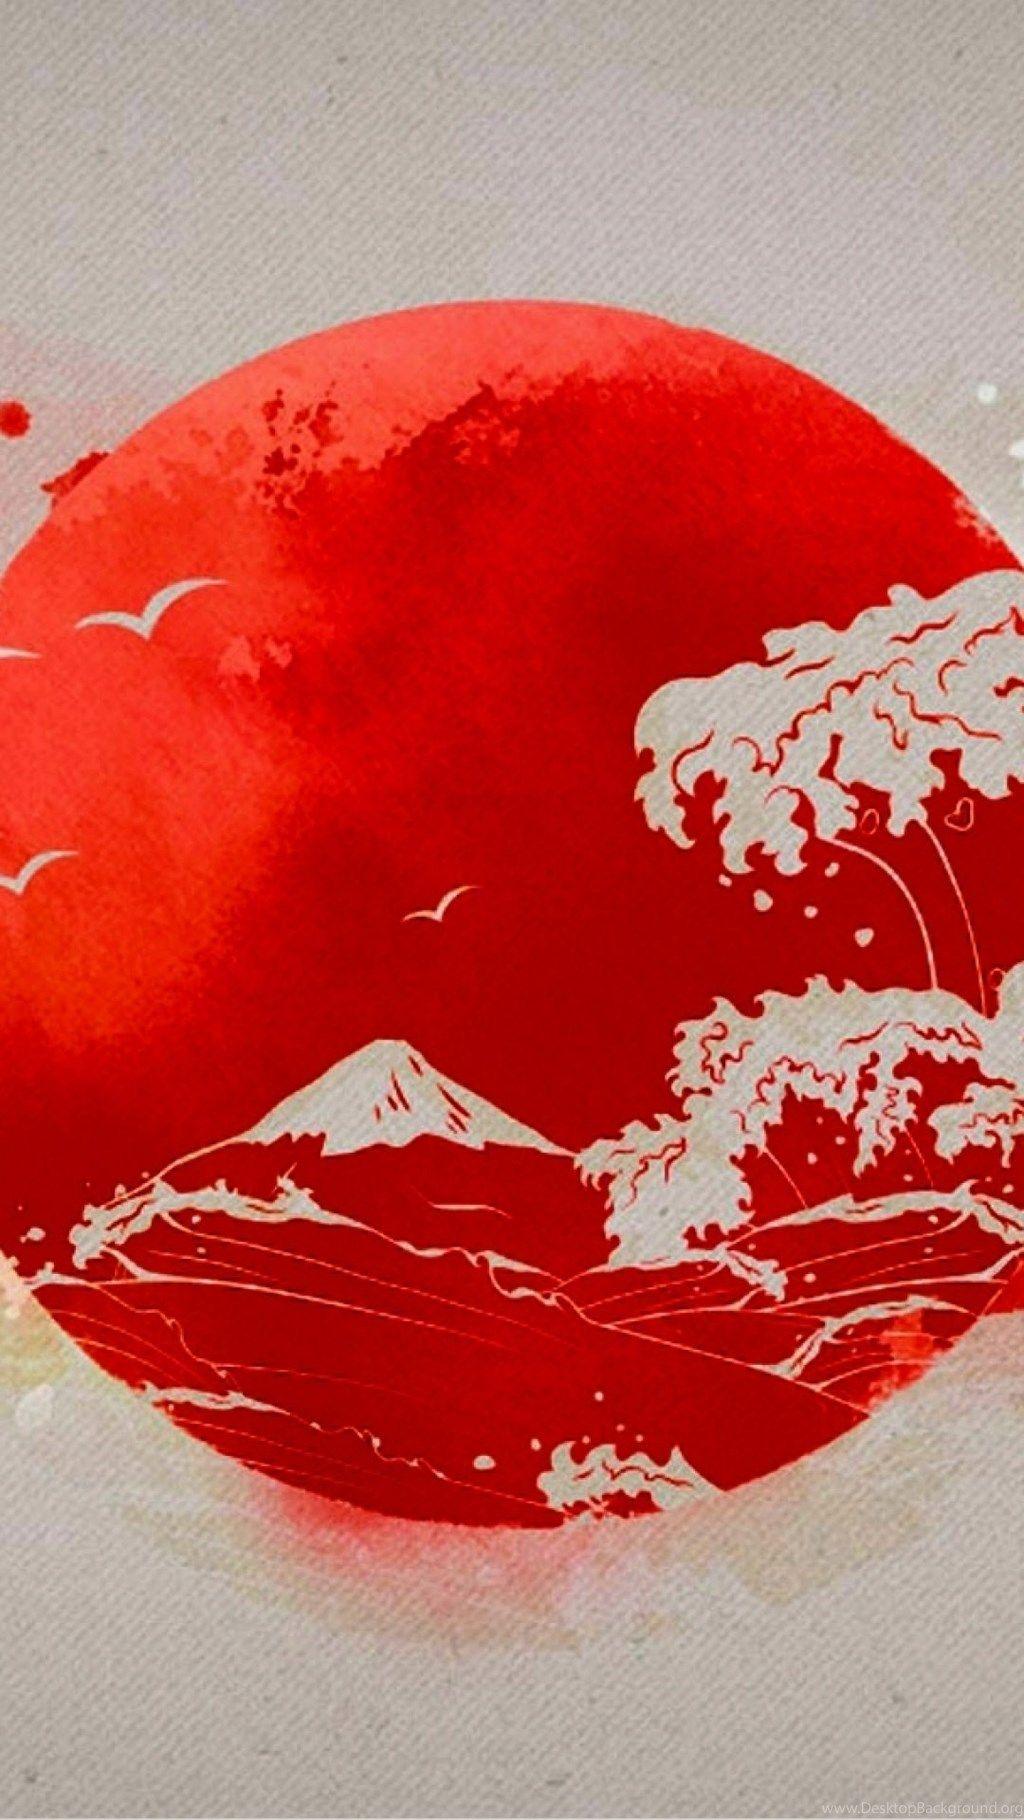 Japan Flag iPhone 6 Wallpaper Desktop Background